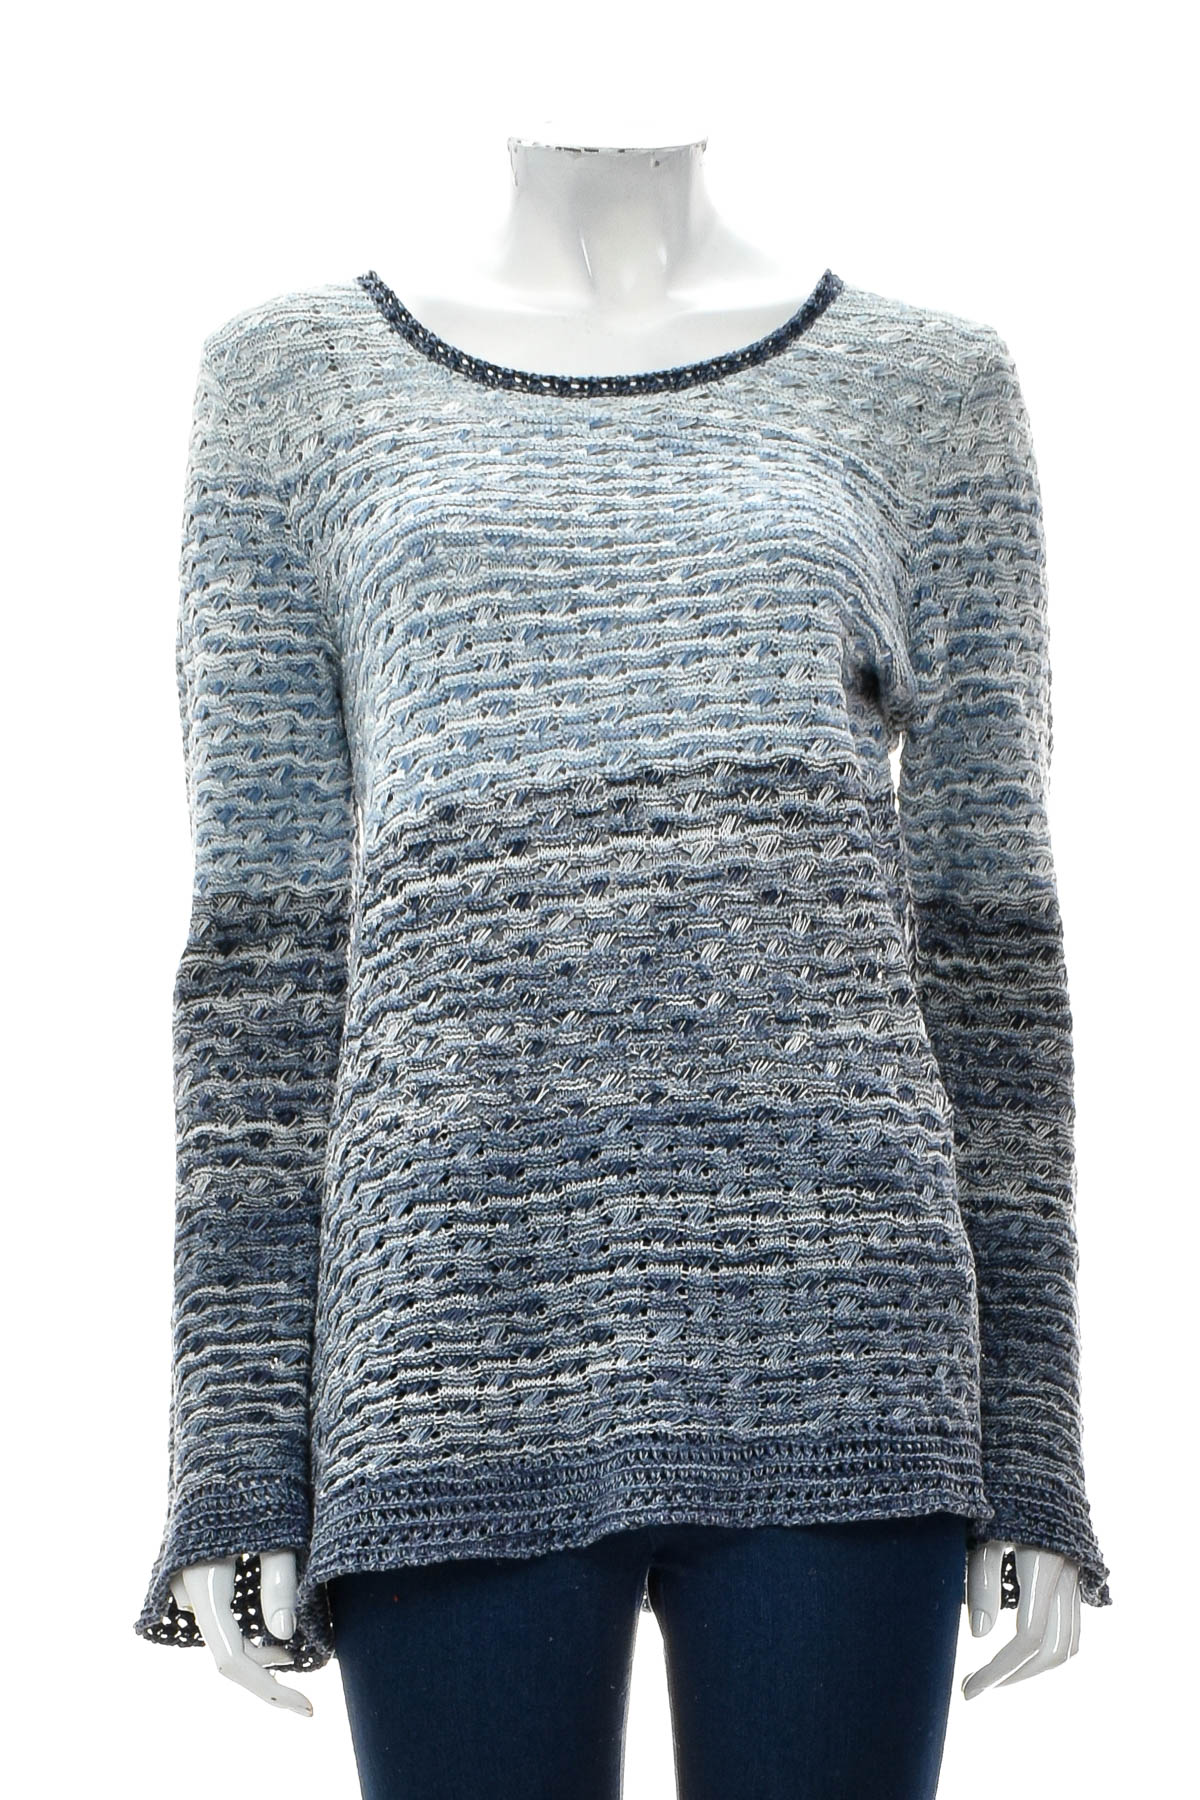 Women's sweater - Style & Co. - 0